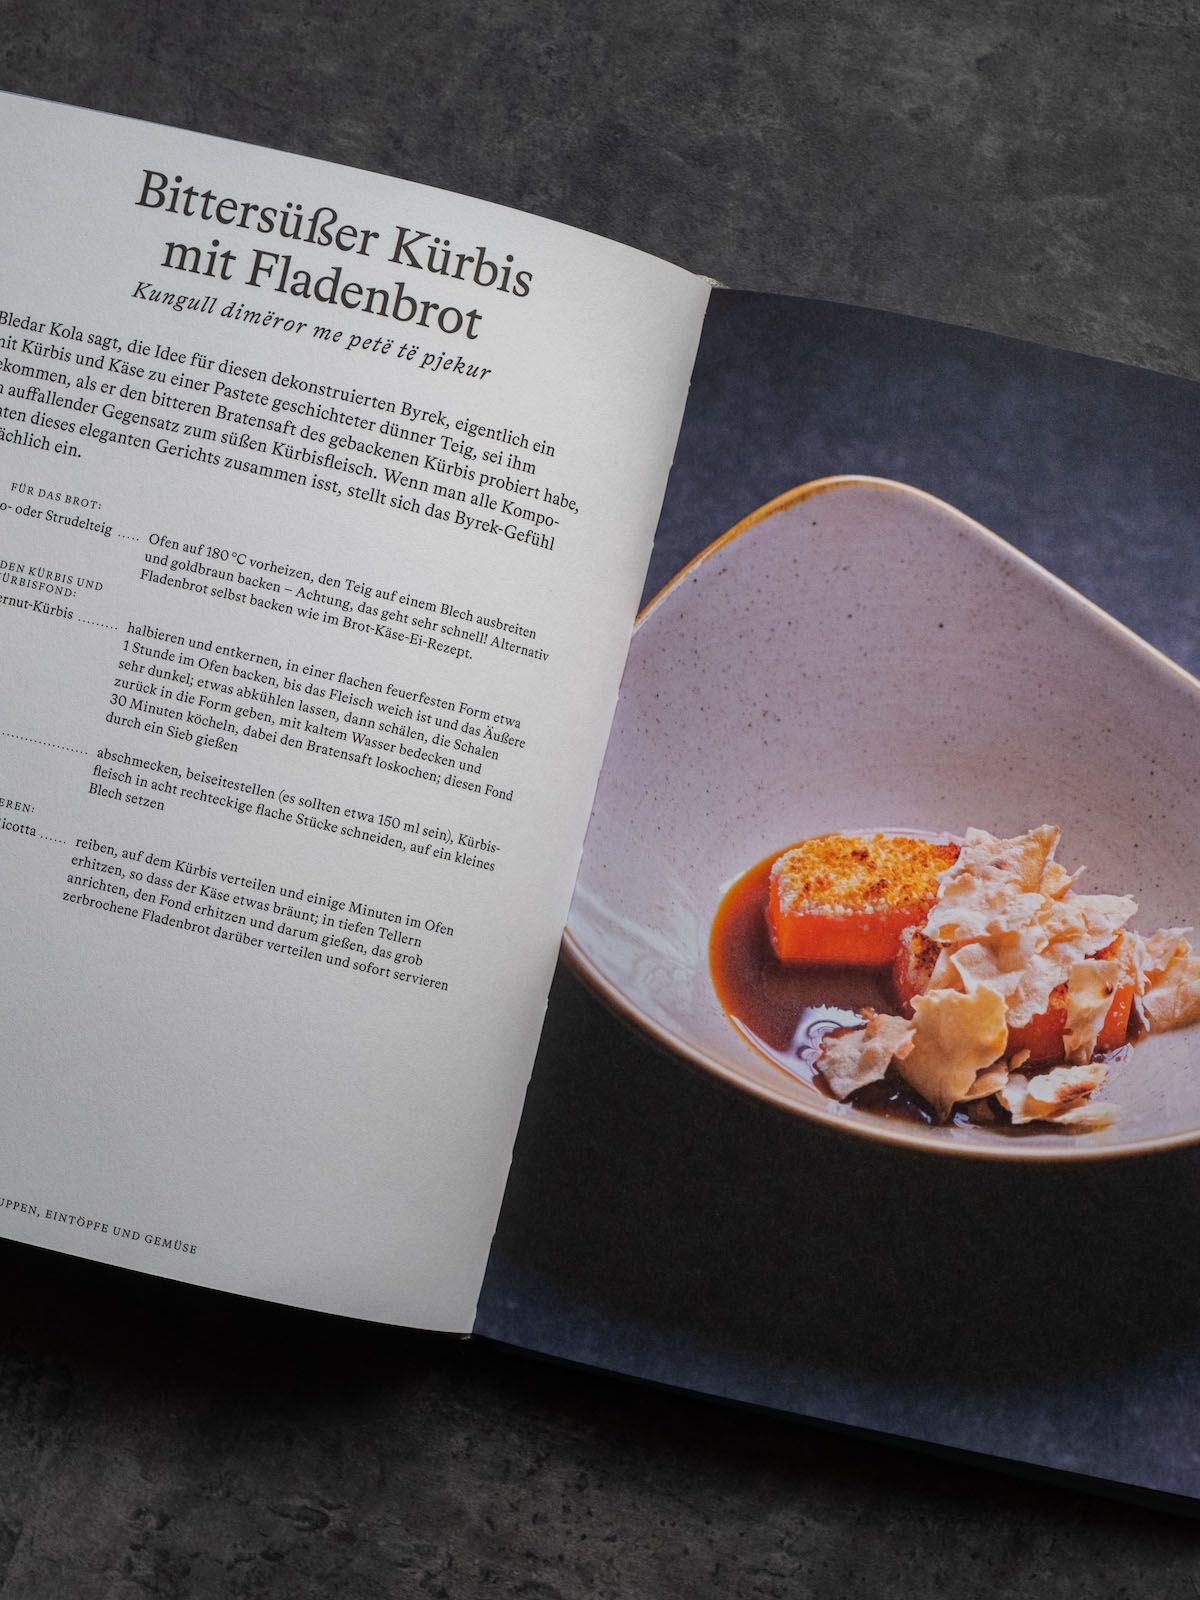 Leckerbissen About Fuel Foodblog Bledar Kola Kochbuch, Dessert, Kürbis